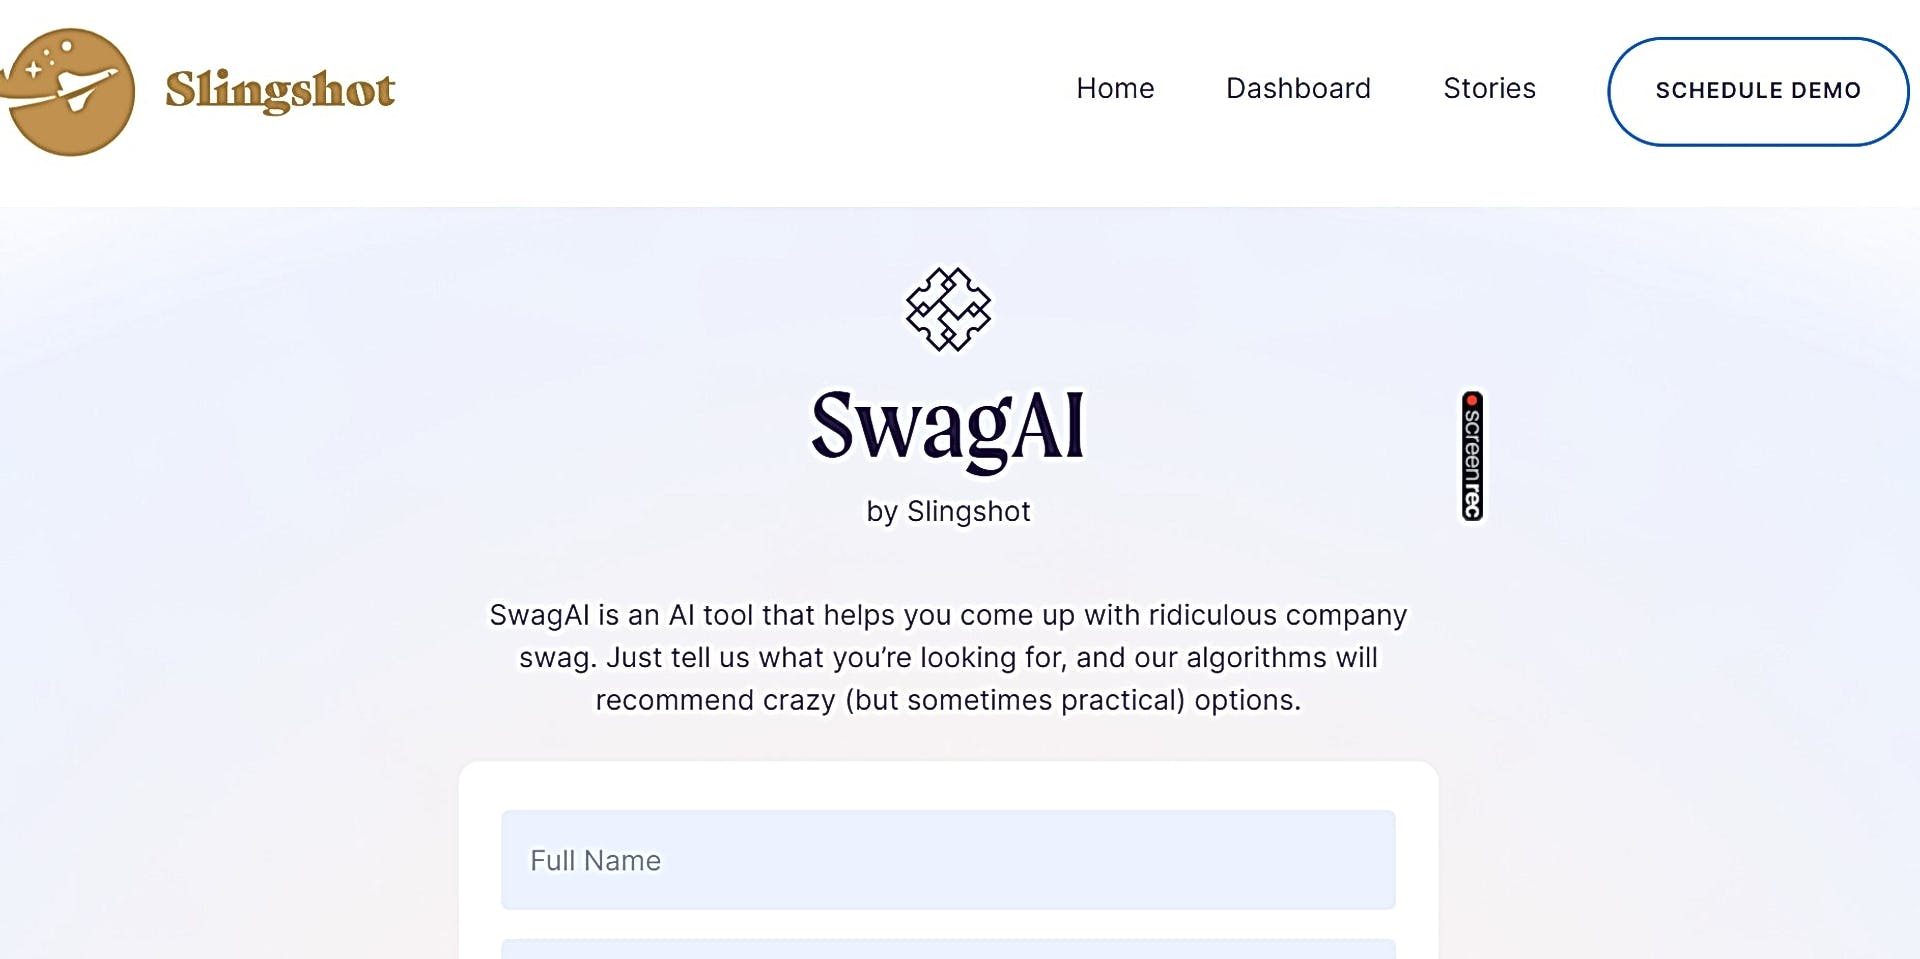 SwagAI featured